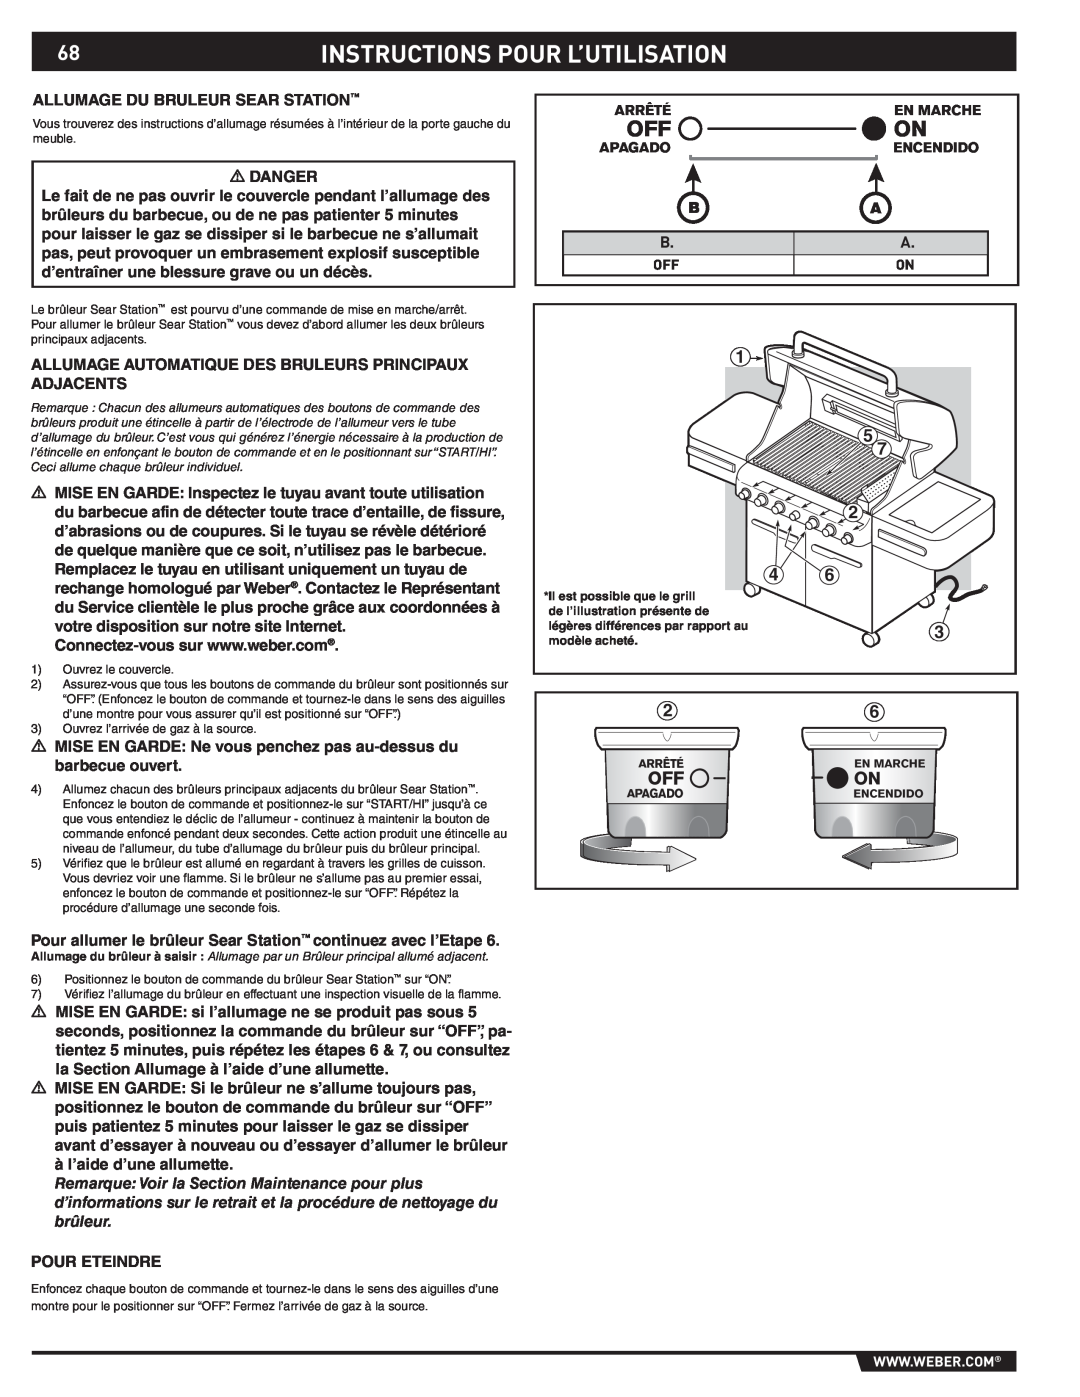 Weber S-470TM manual Instructions Pour L’Utilisation 